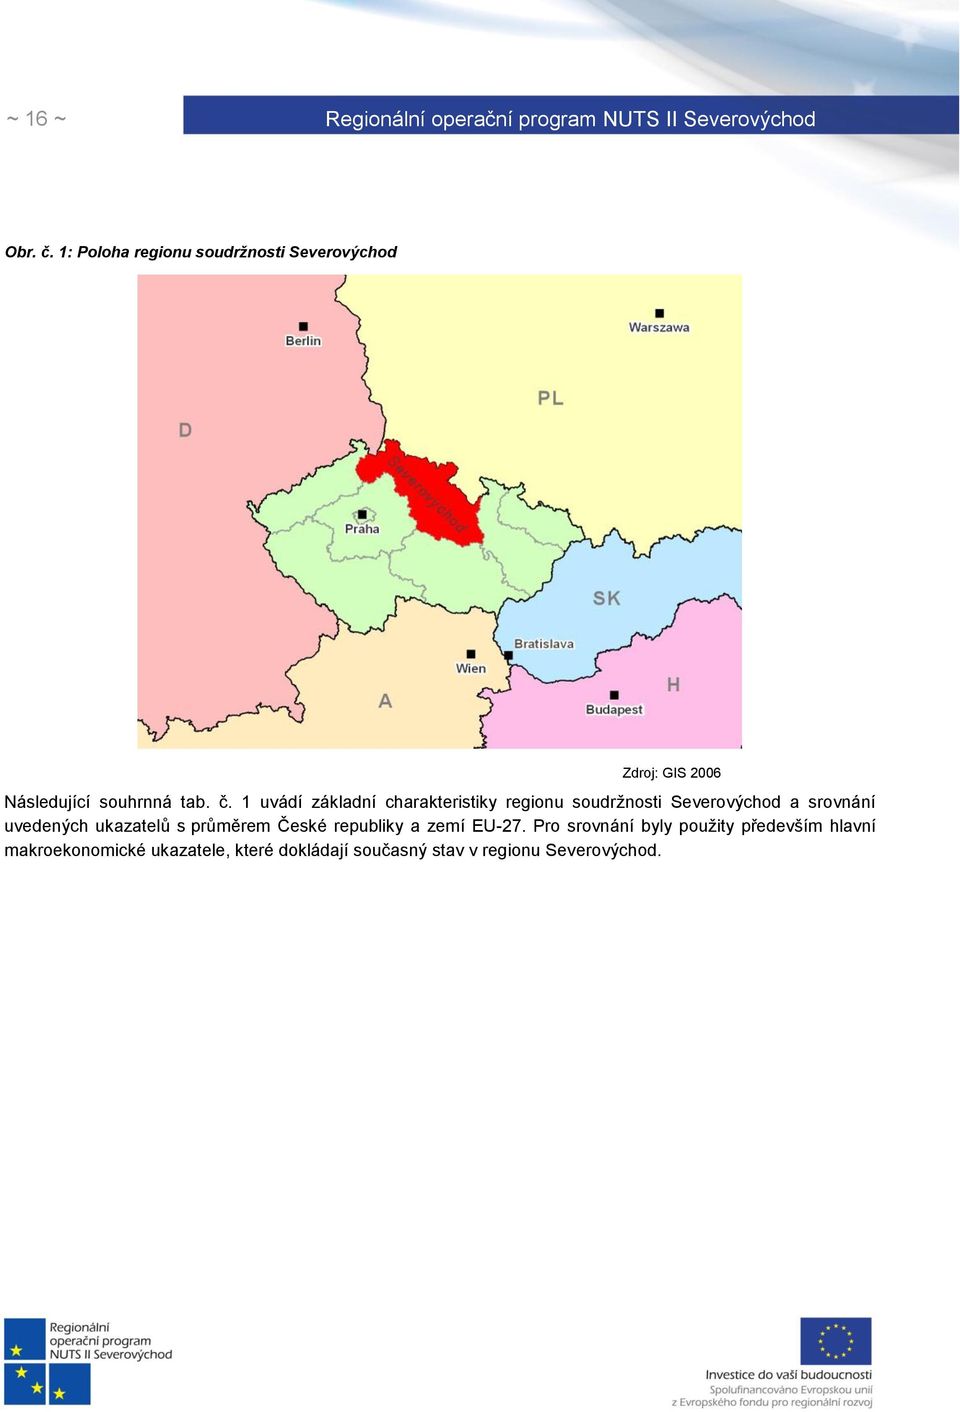 1 uvádí základní charakteristiky regionu soudrţnosti Severovýchod a srovnání uvedených